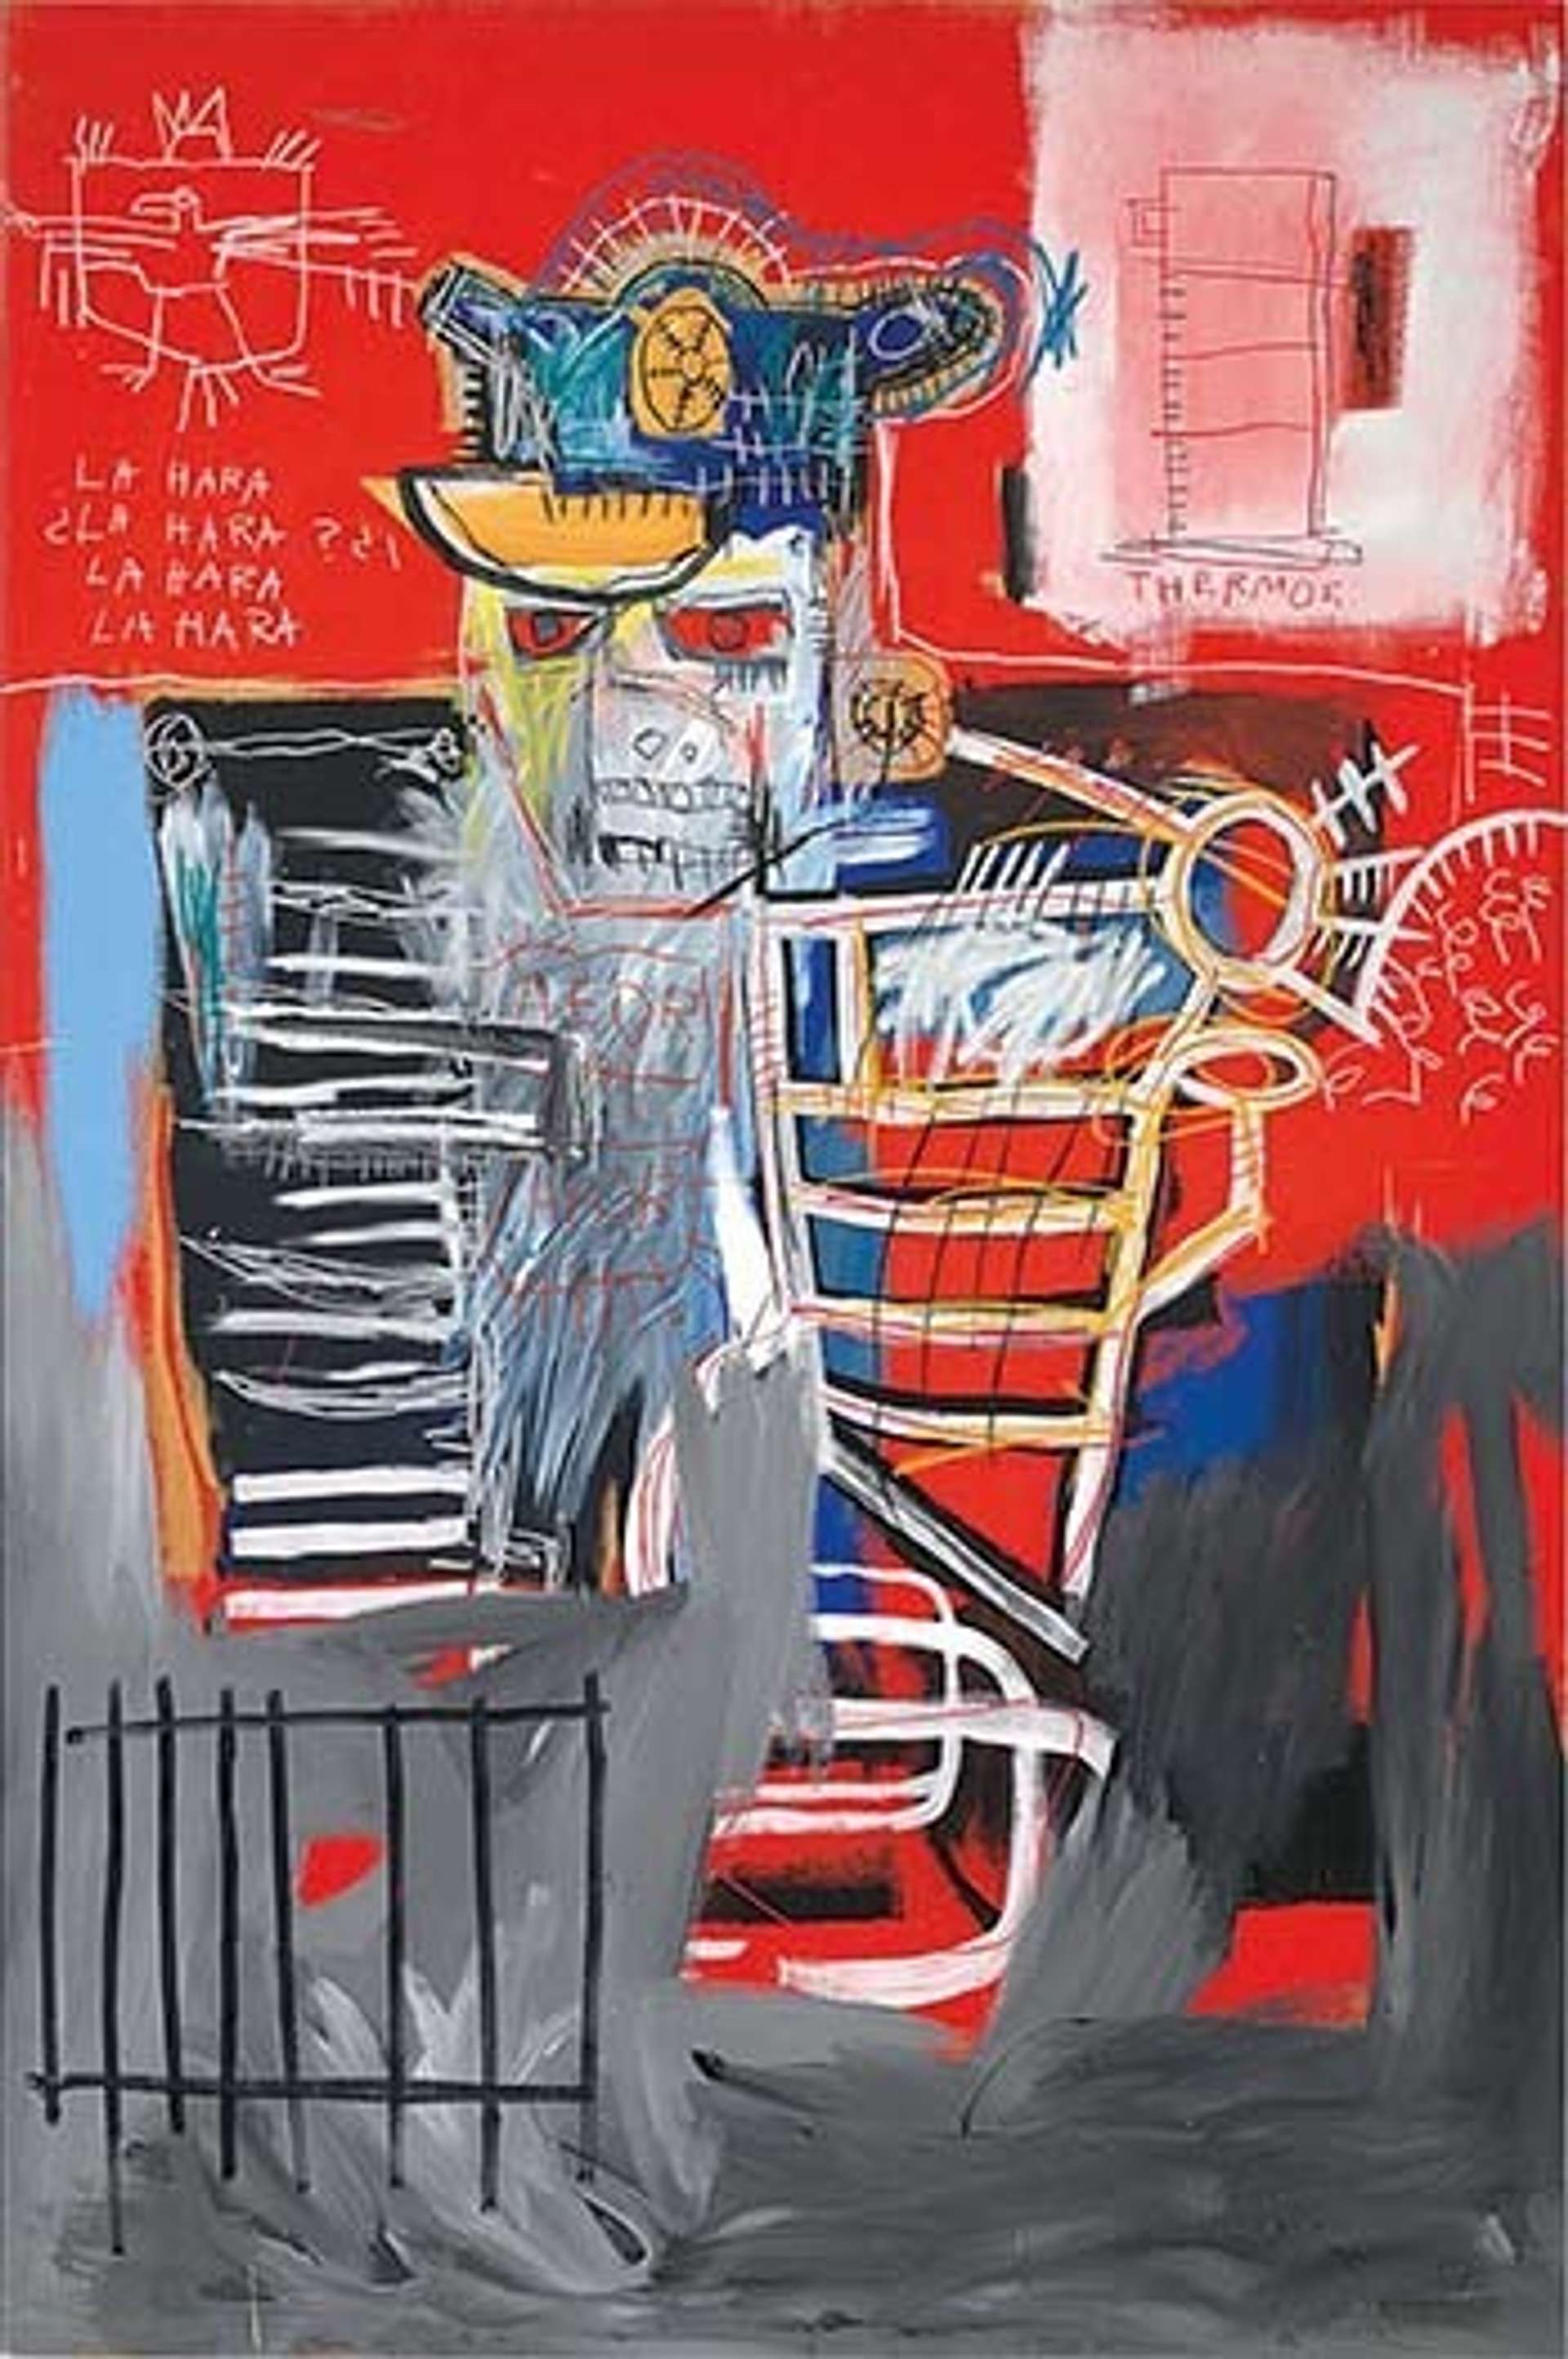 La Hara by Jean-Michel Basquiat